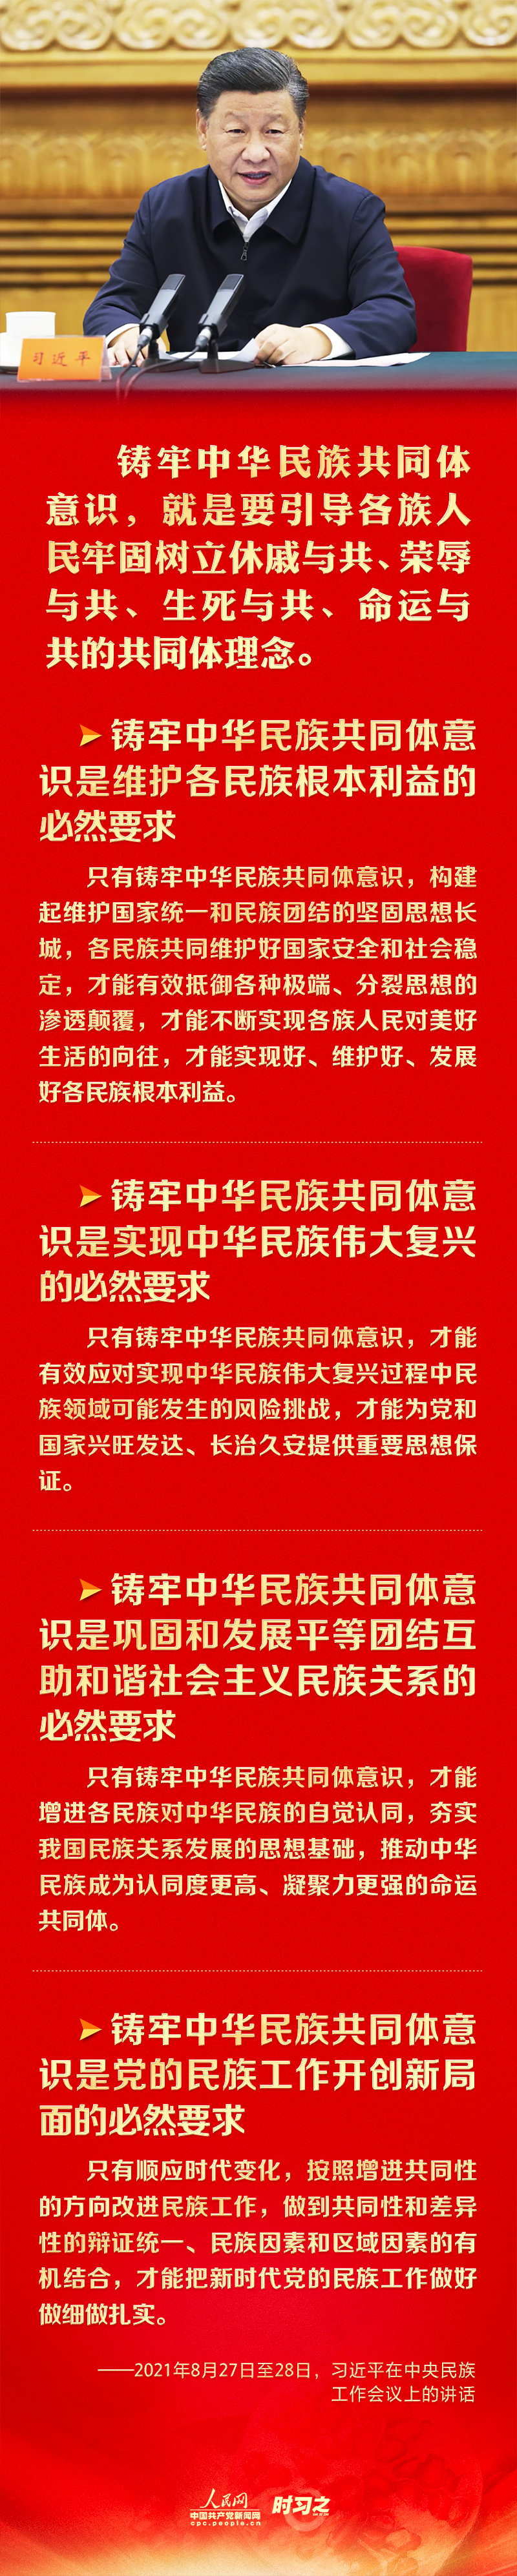 铸牢中华民族共同体意识 习近平强调这四个“必然要求”